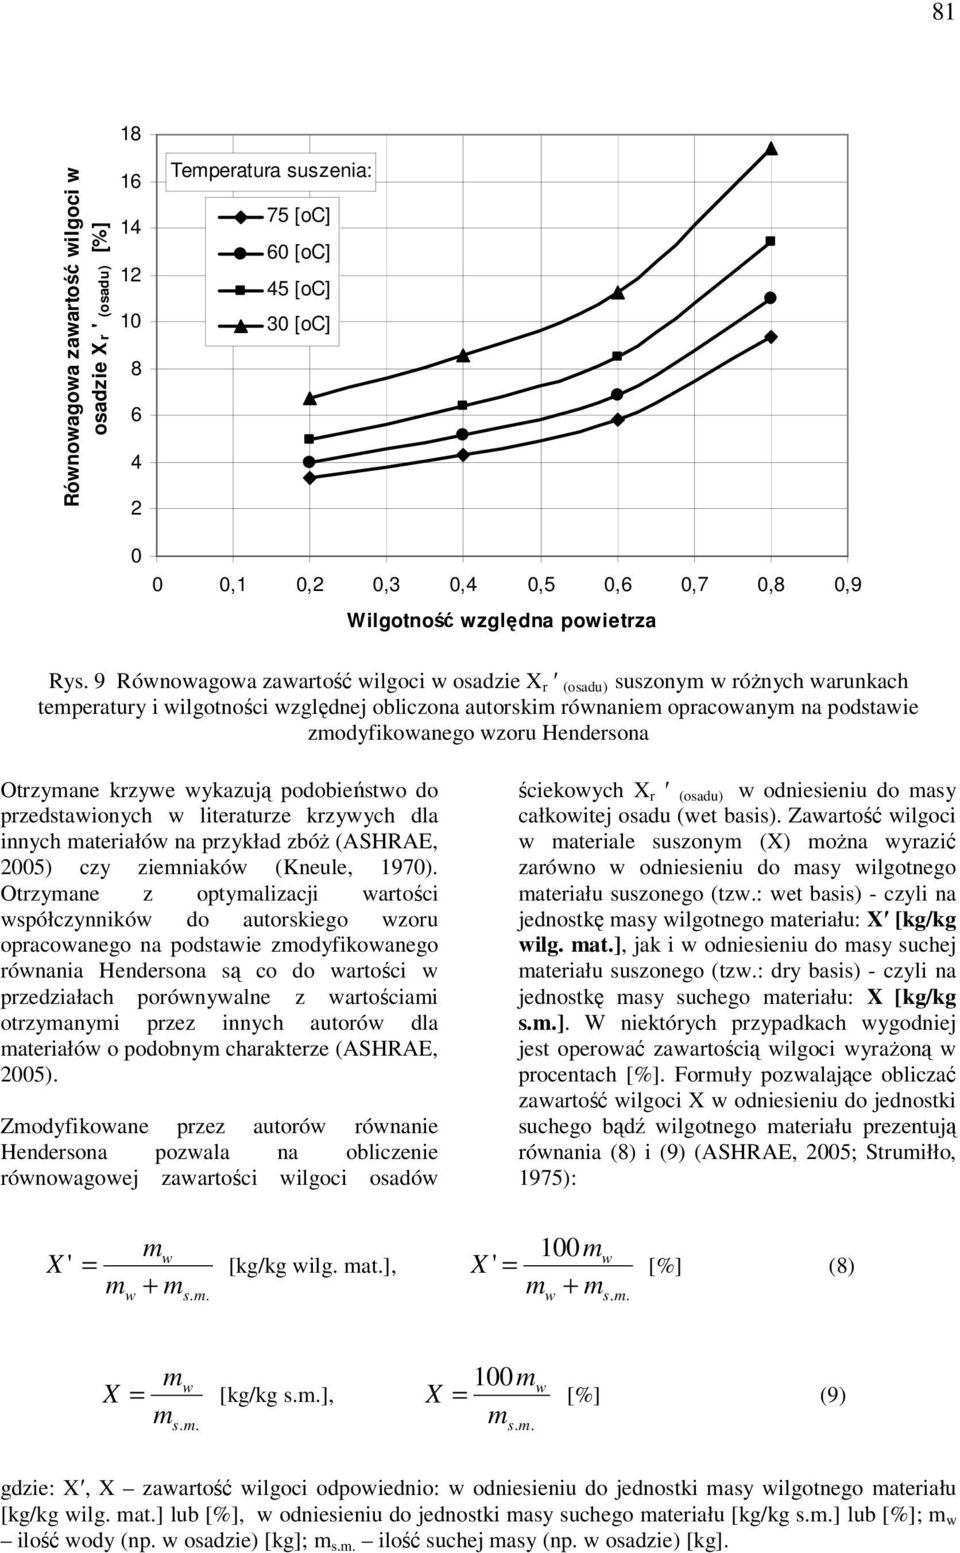 Otzymane kzywe wykazują podobieństwo do pzedstawionych w liteatuze kzywych dla innych mateiałów na pzykład zbóż (ASHRAE, 2005) czy ziemniaków (Kneule, 1970).